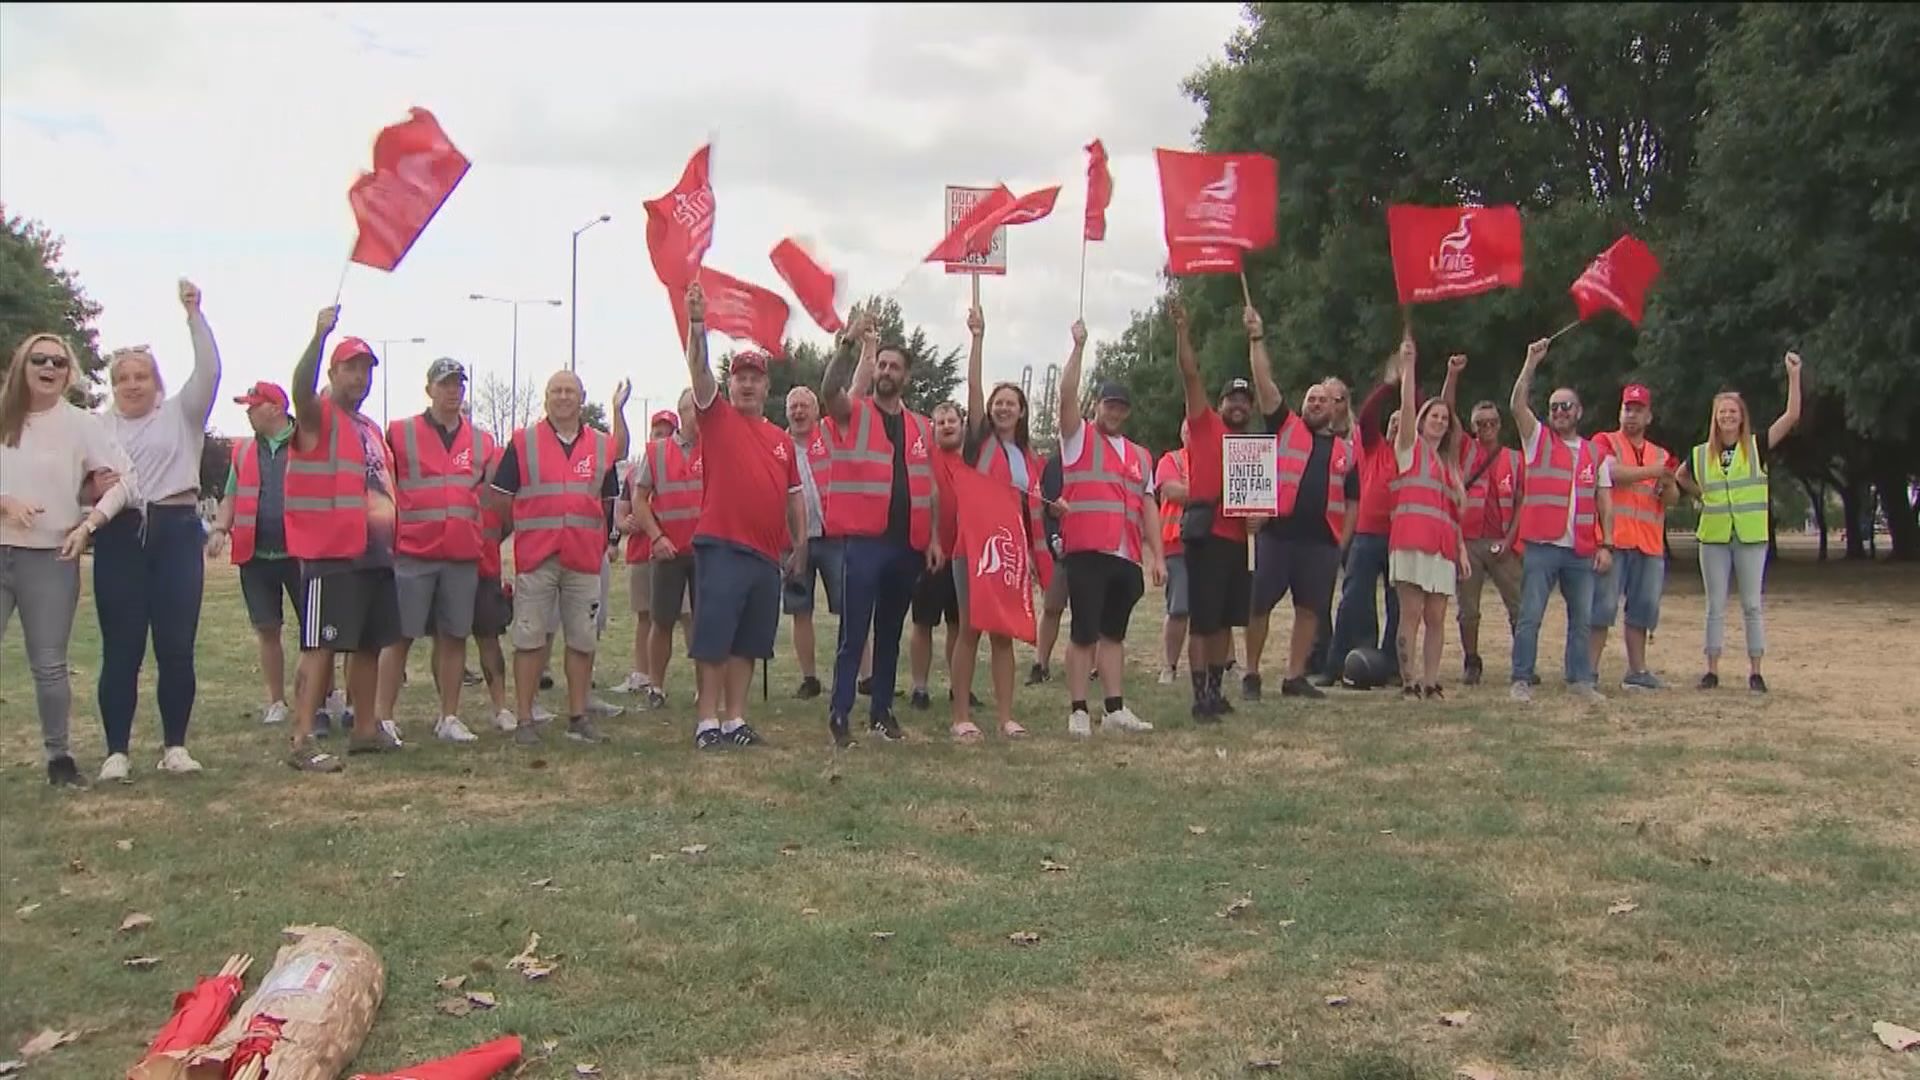 英國工會提出動議呼籲加強協調罷工增談判籌碼